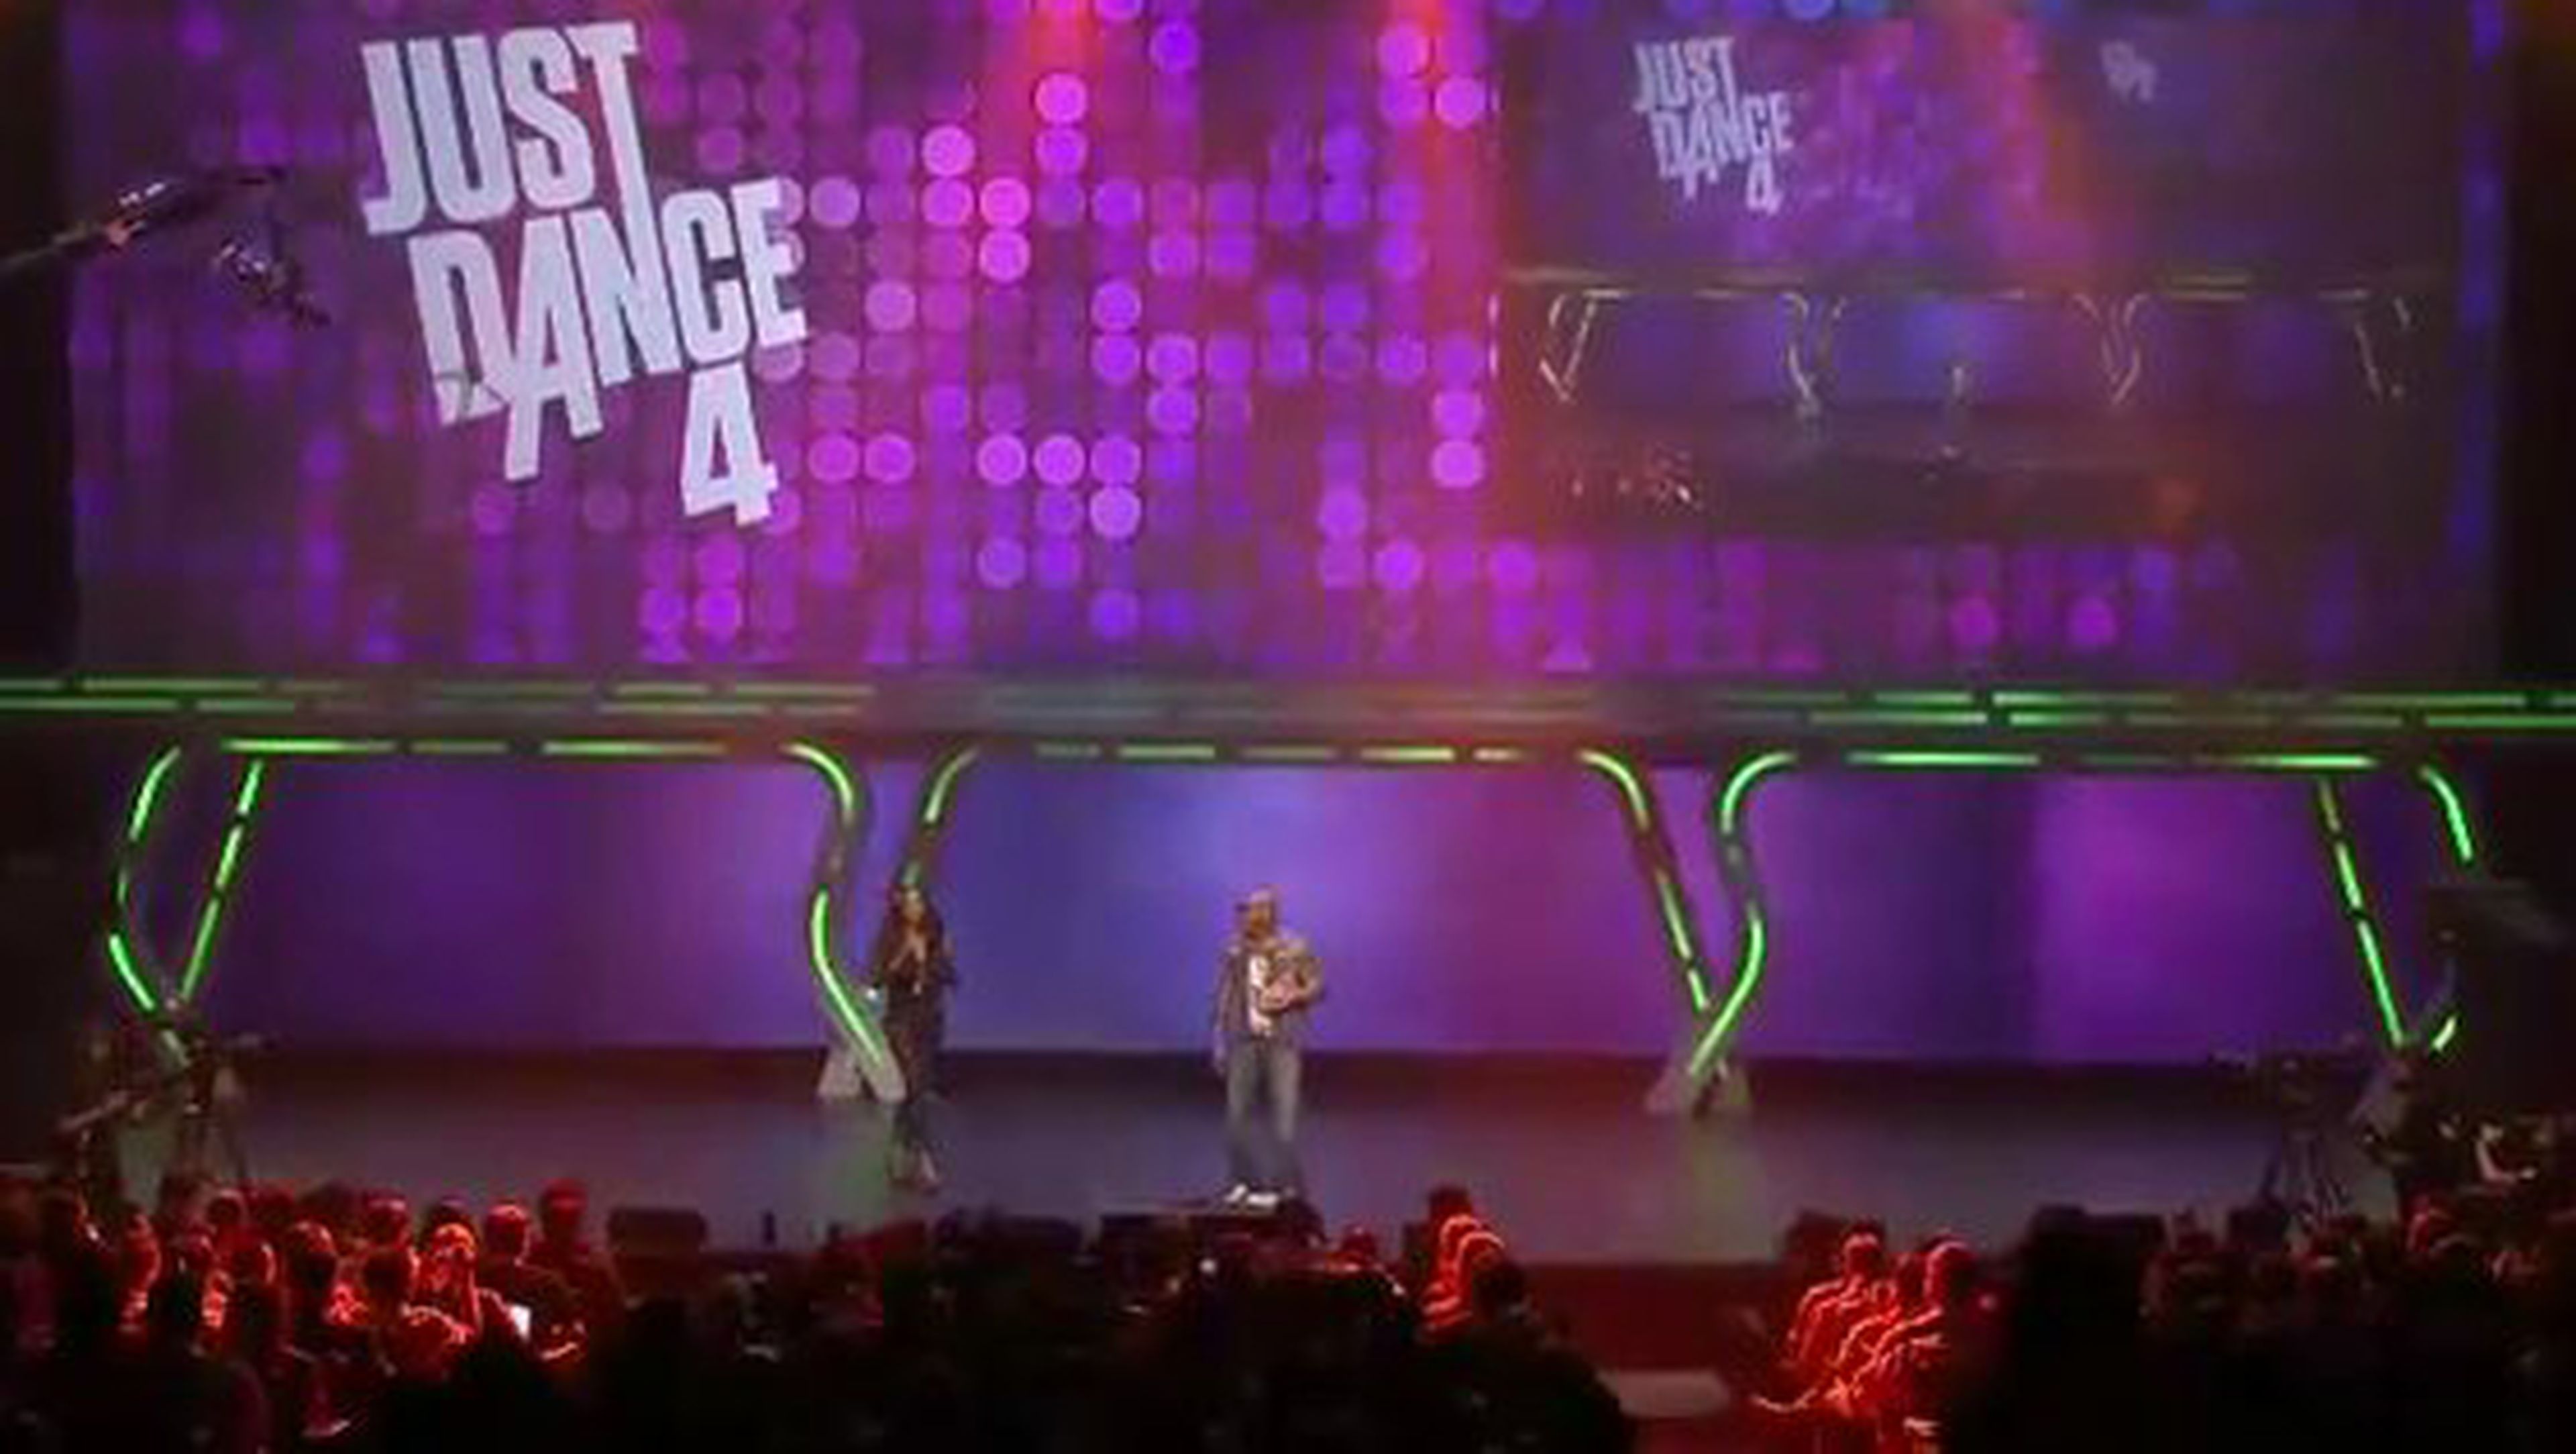 E3 2012: Just Dance 4, subidón, subidón...